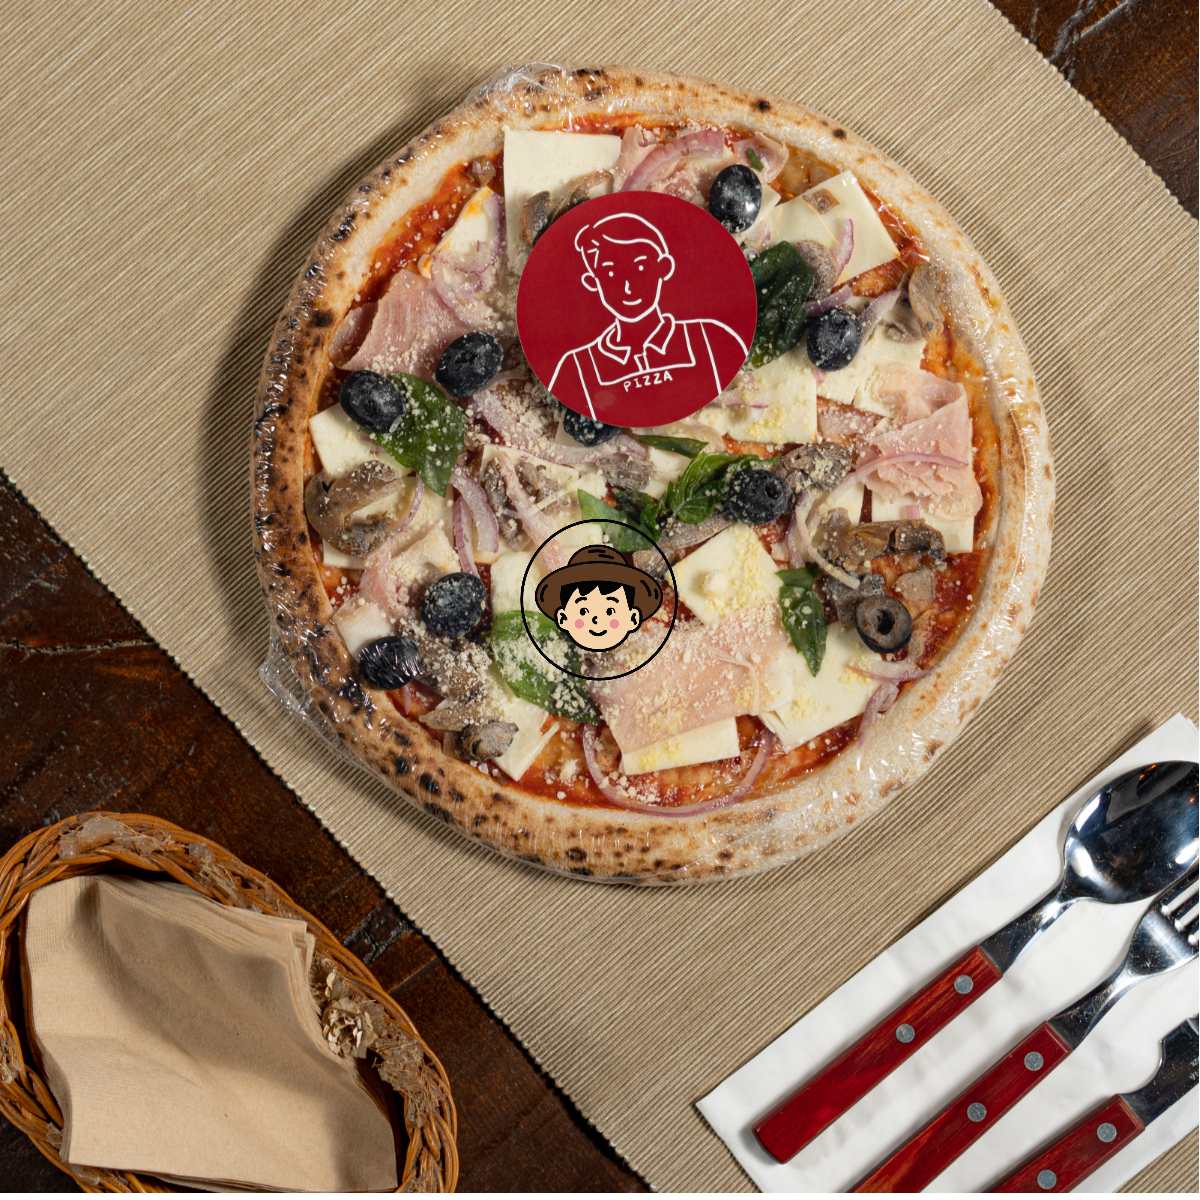 바질피자 카프리쵸사 집에서 즐기는 정통 이태리 피자 청년이그린피자 이탈리아 화덕피자